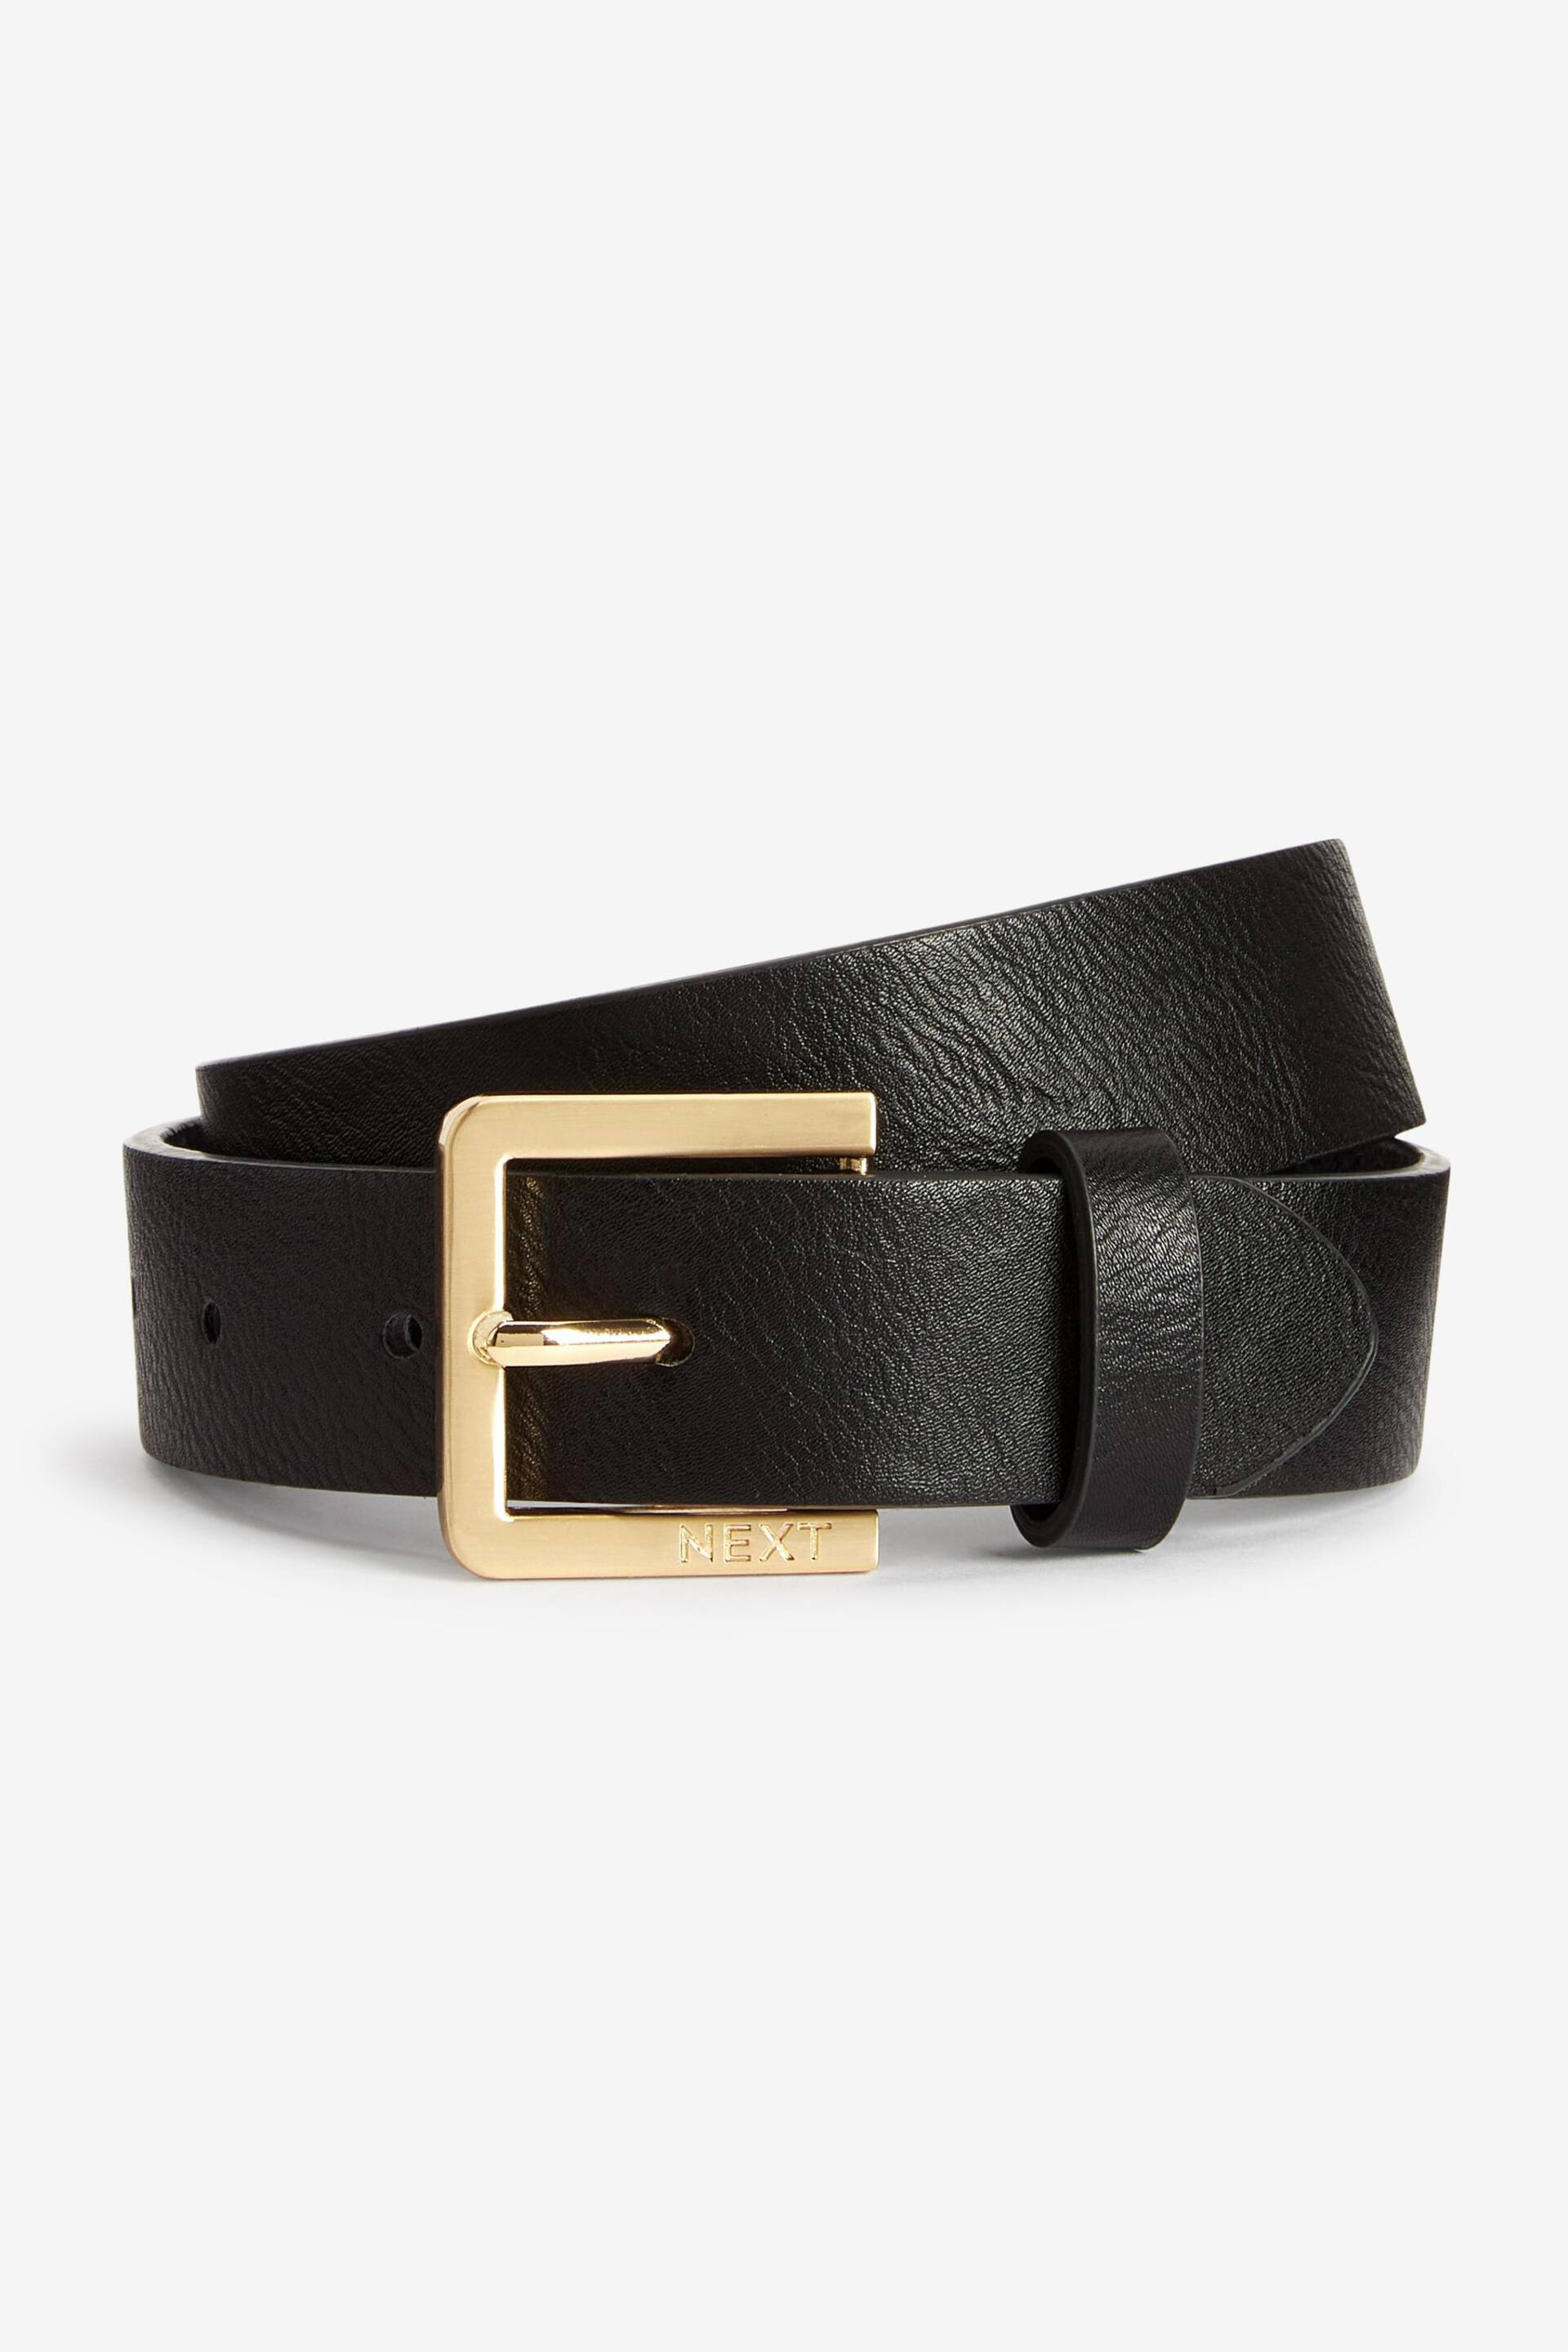 Black Leather Gold Buckle Belt - Image 1 of 1